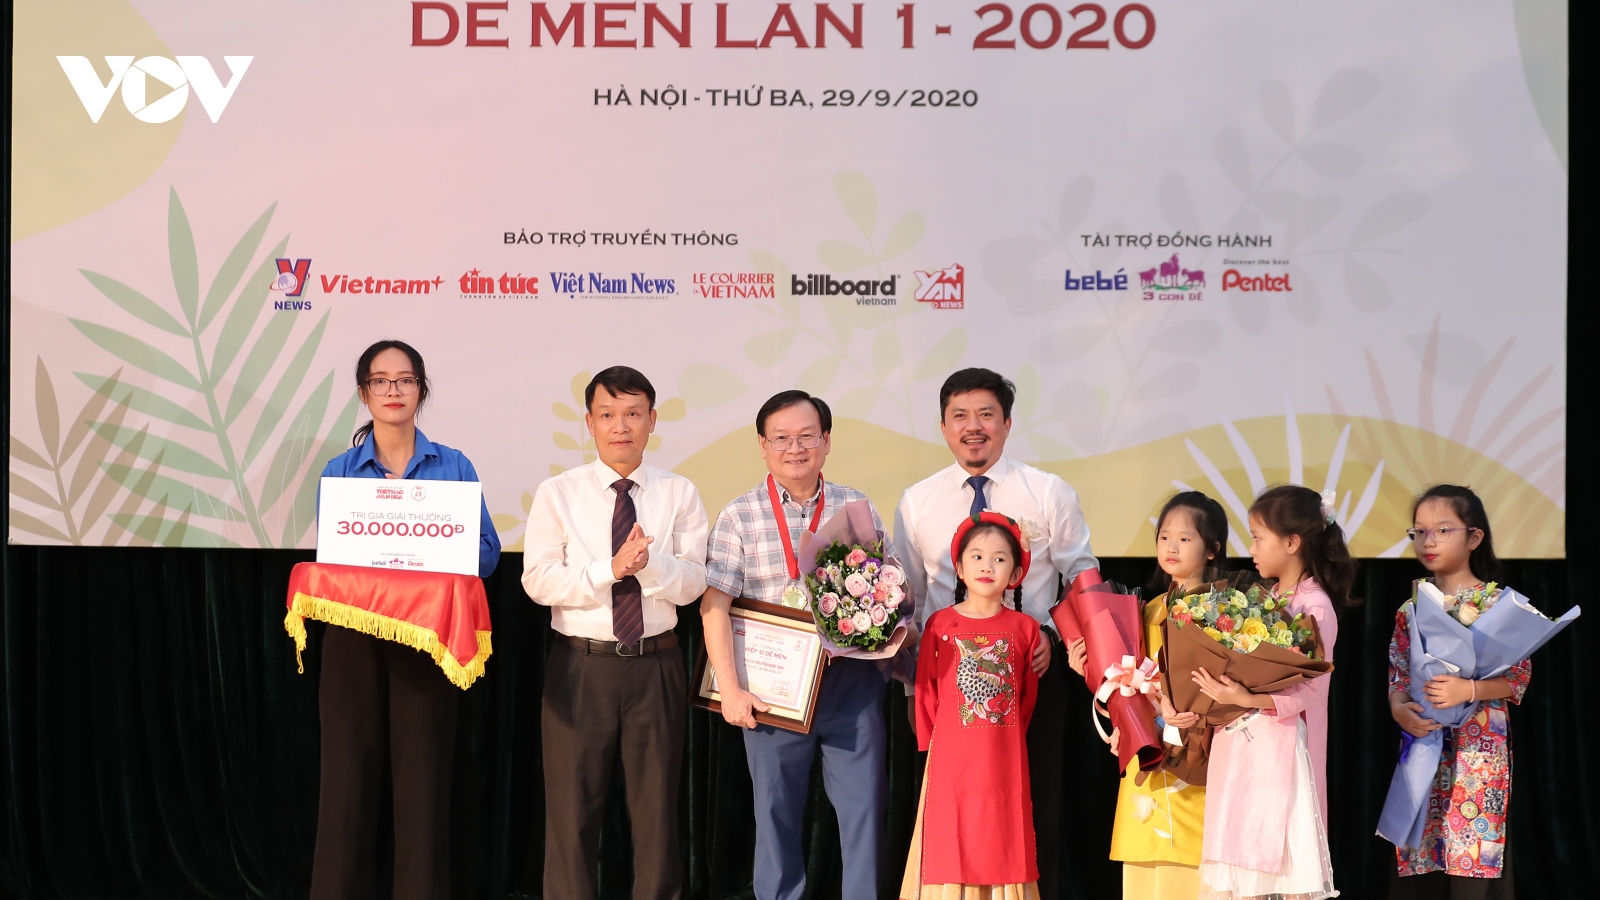 Nguyễn Nhật Ánh nhận giải "Hiệp sĩ Dế Mèn", ủng hộ toàn bộ số tiền cho Giải thưởng